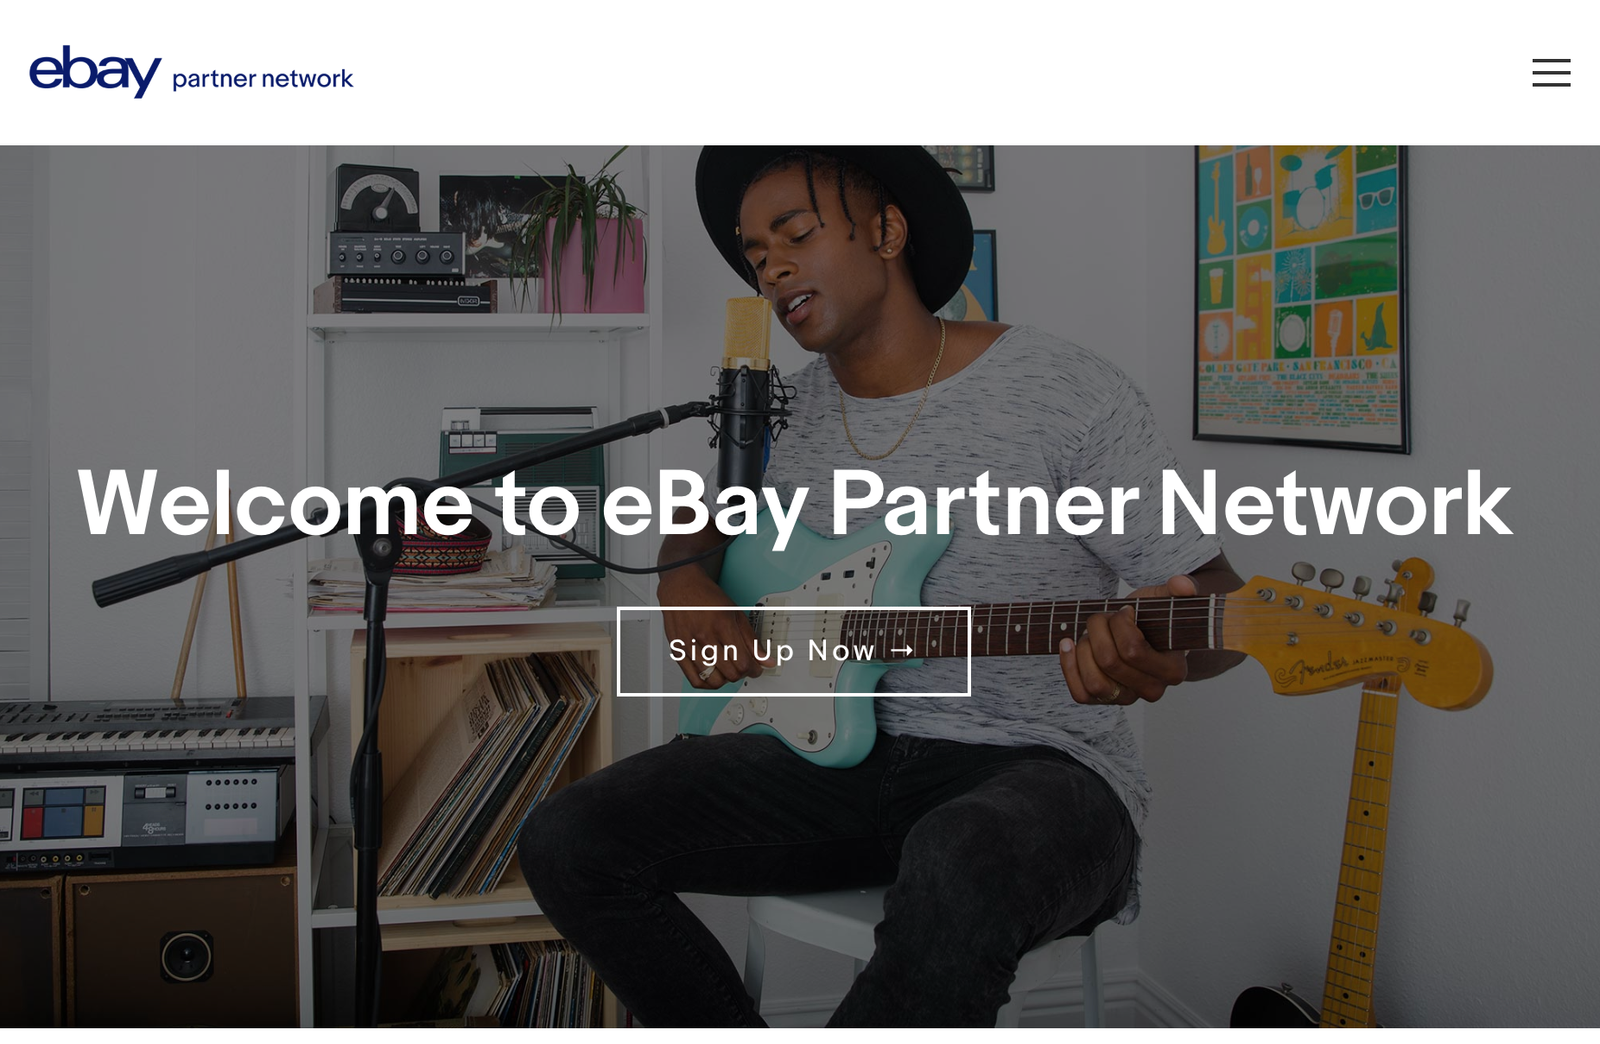 ebay partner network make money as an affiliate